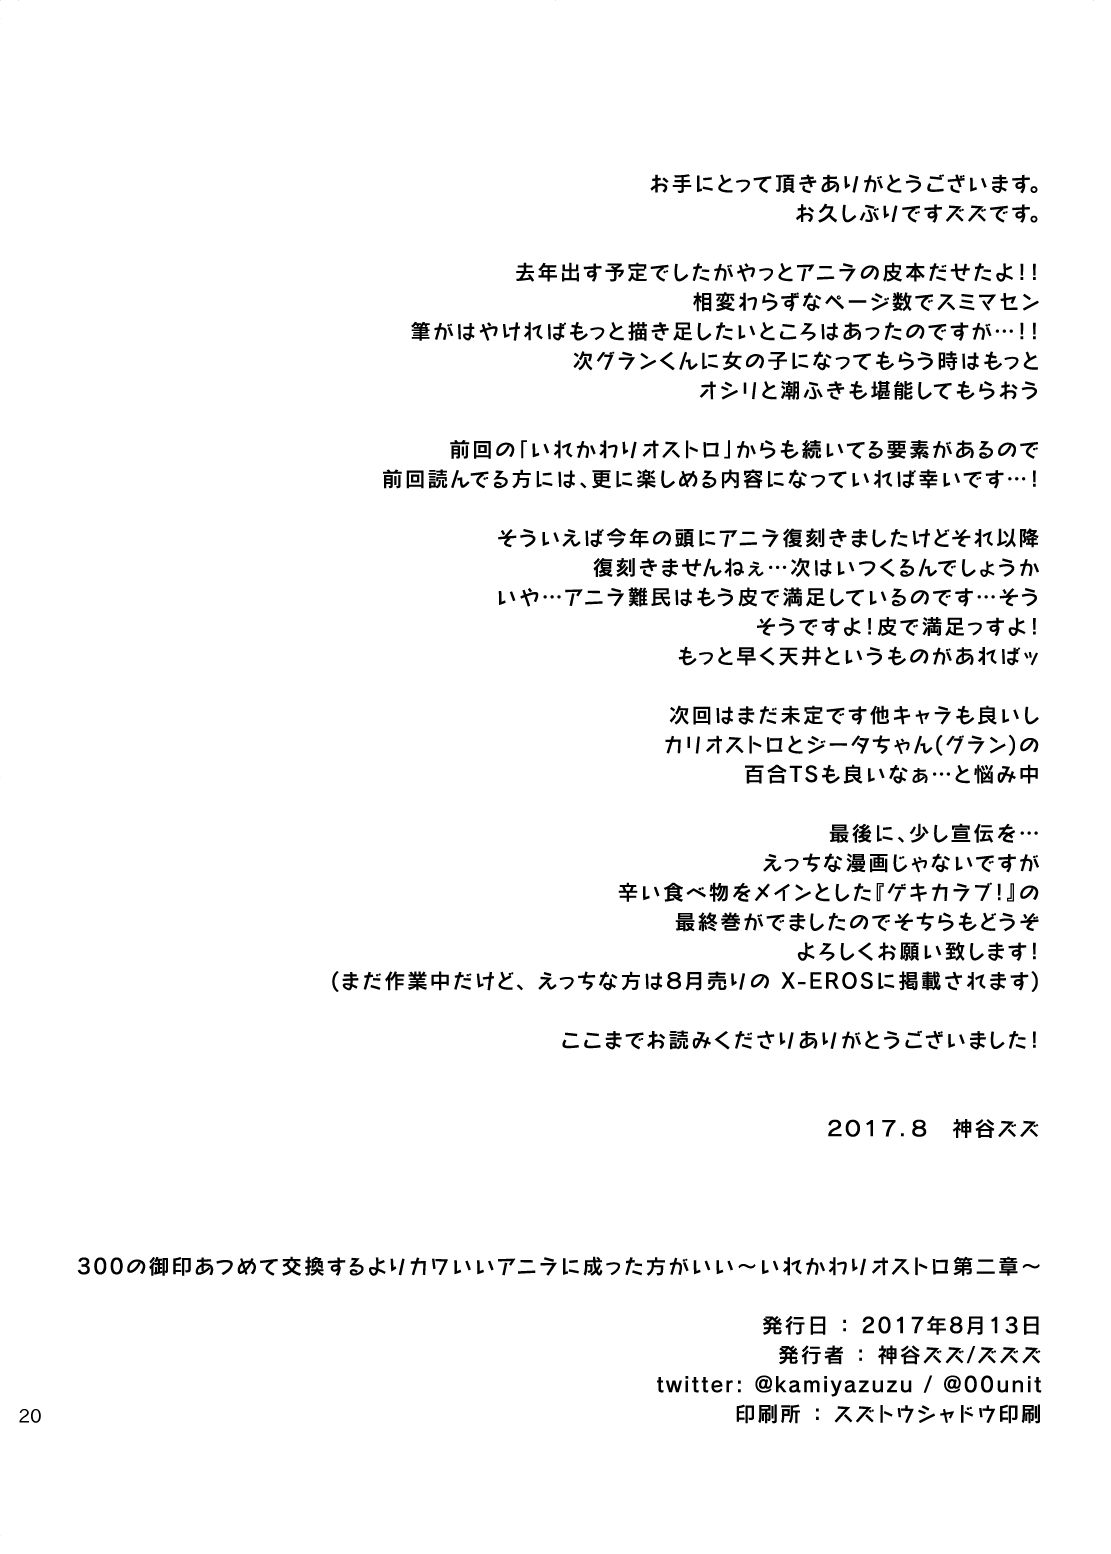 [ZUZUZU (Kamiya Zuzu, Hitomasu Modoru)] 300 no Oshirushi Atsumete Koukan suru yori Kawaii Anira ni Natta hou ga Ii (Granblue Fantasy) [Digital] page 21 full